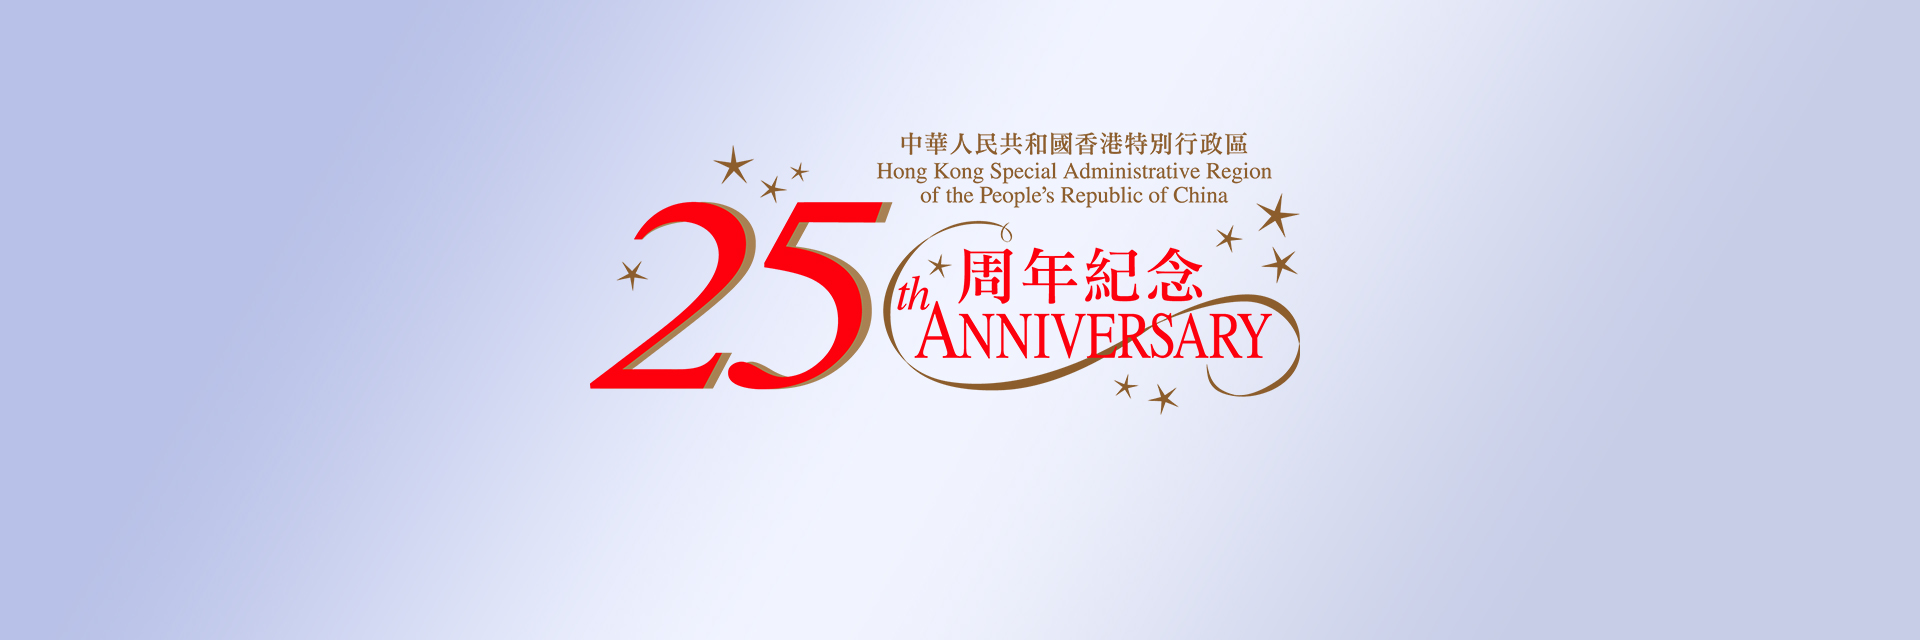 第二十三届青洽会设立展位宣传香港和庆祝香港特别行政区成立25周年